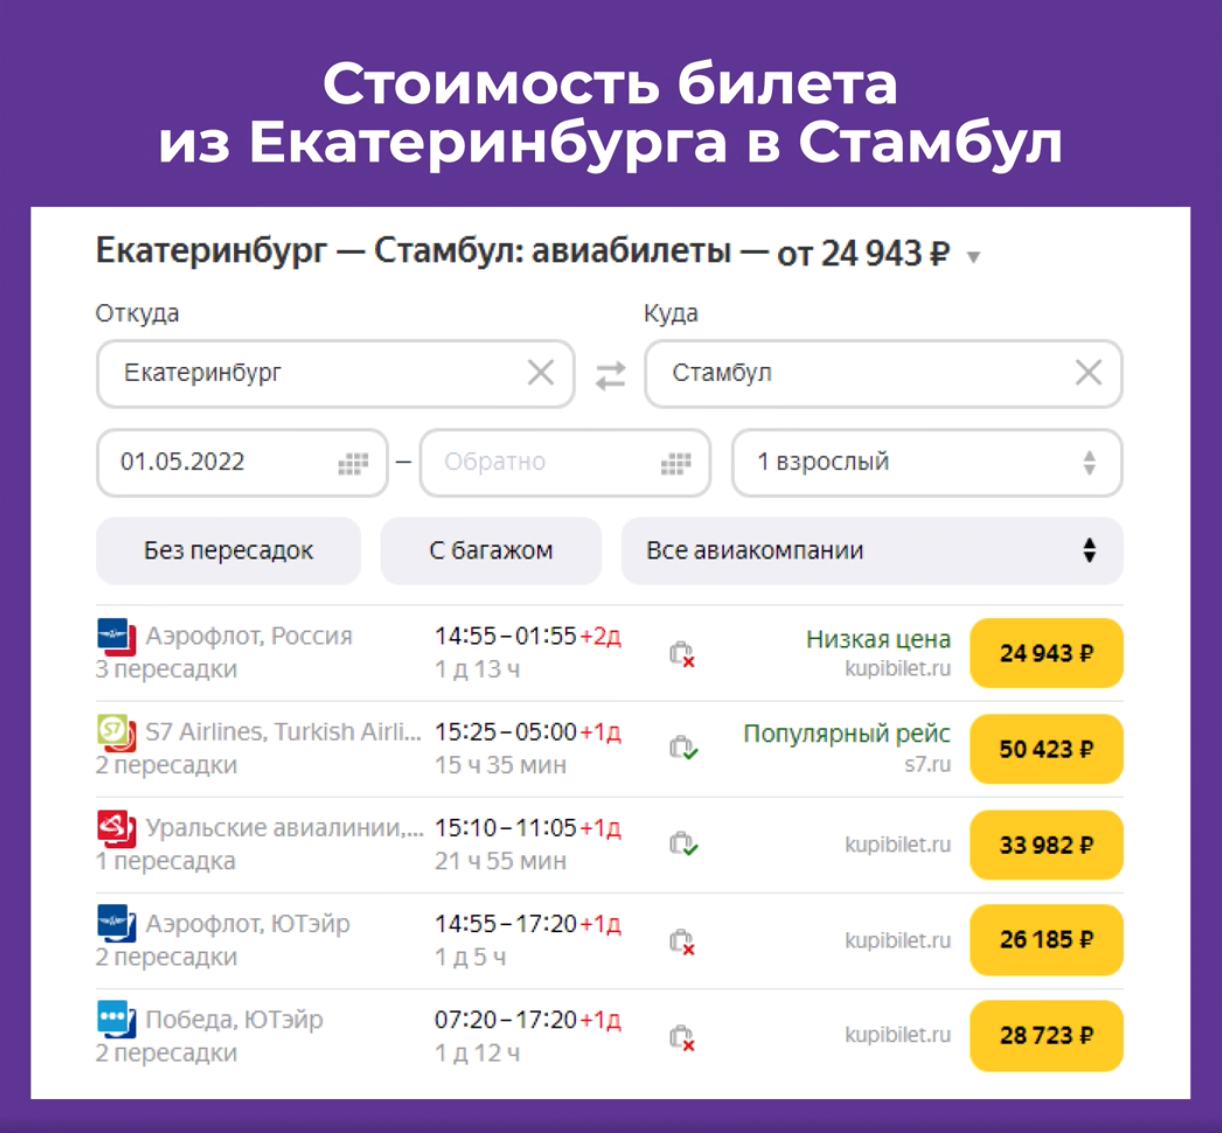 Стоимость билета из Екатеринбурга в Стамбул